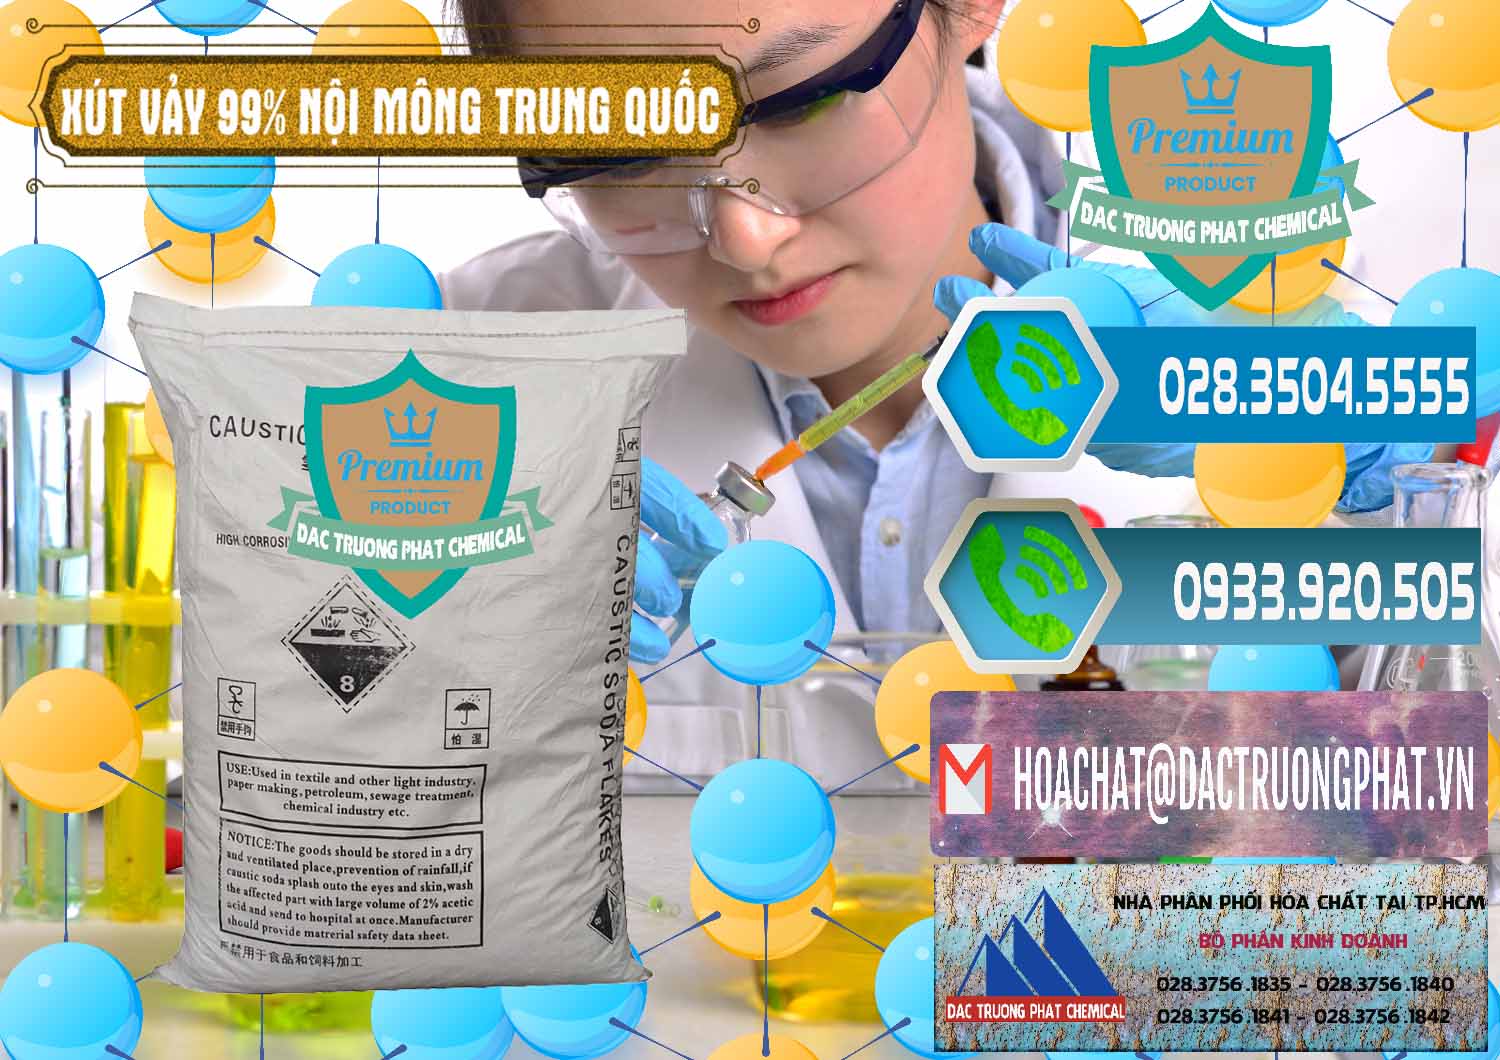 Nơi chuyên cung ứng & bán Xút Vảy - NaOH Vảy 99% Nội Mông Trung Quốc China - 0228 - Chuyên nhập khẩu & cung cấp hóa chất tại TP.HCM - congtyhoachat.net